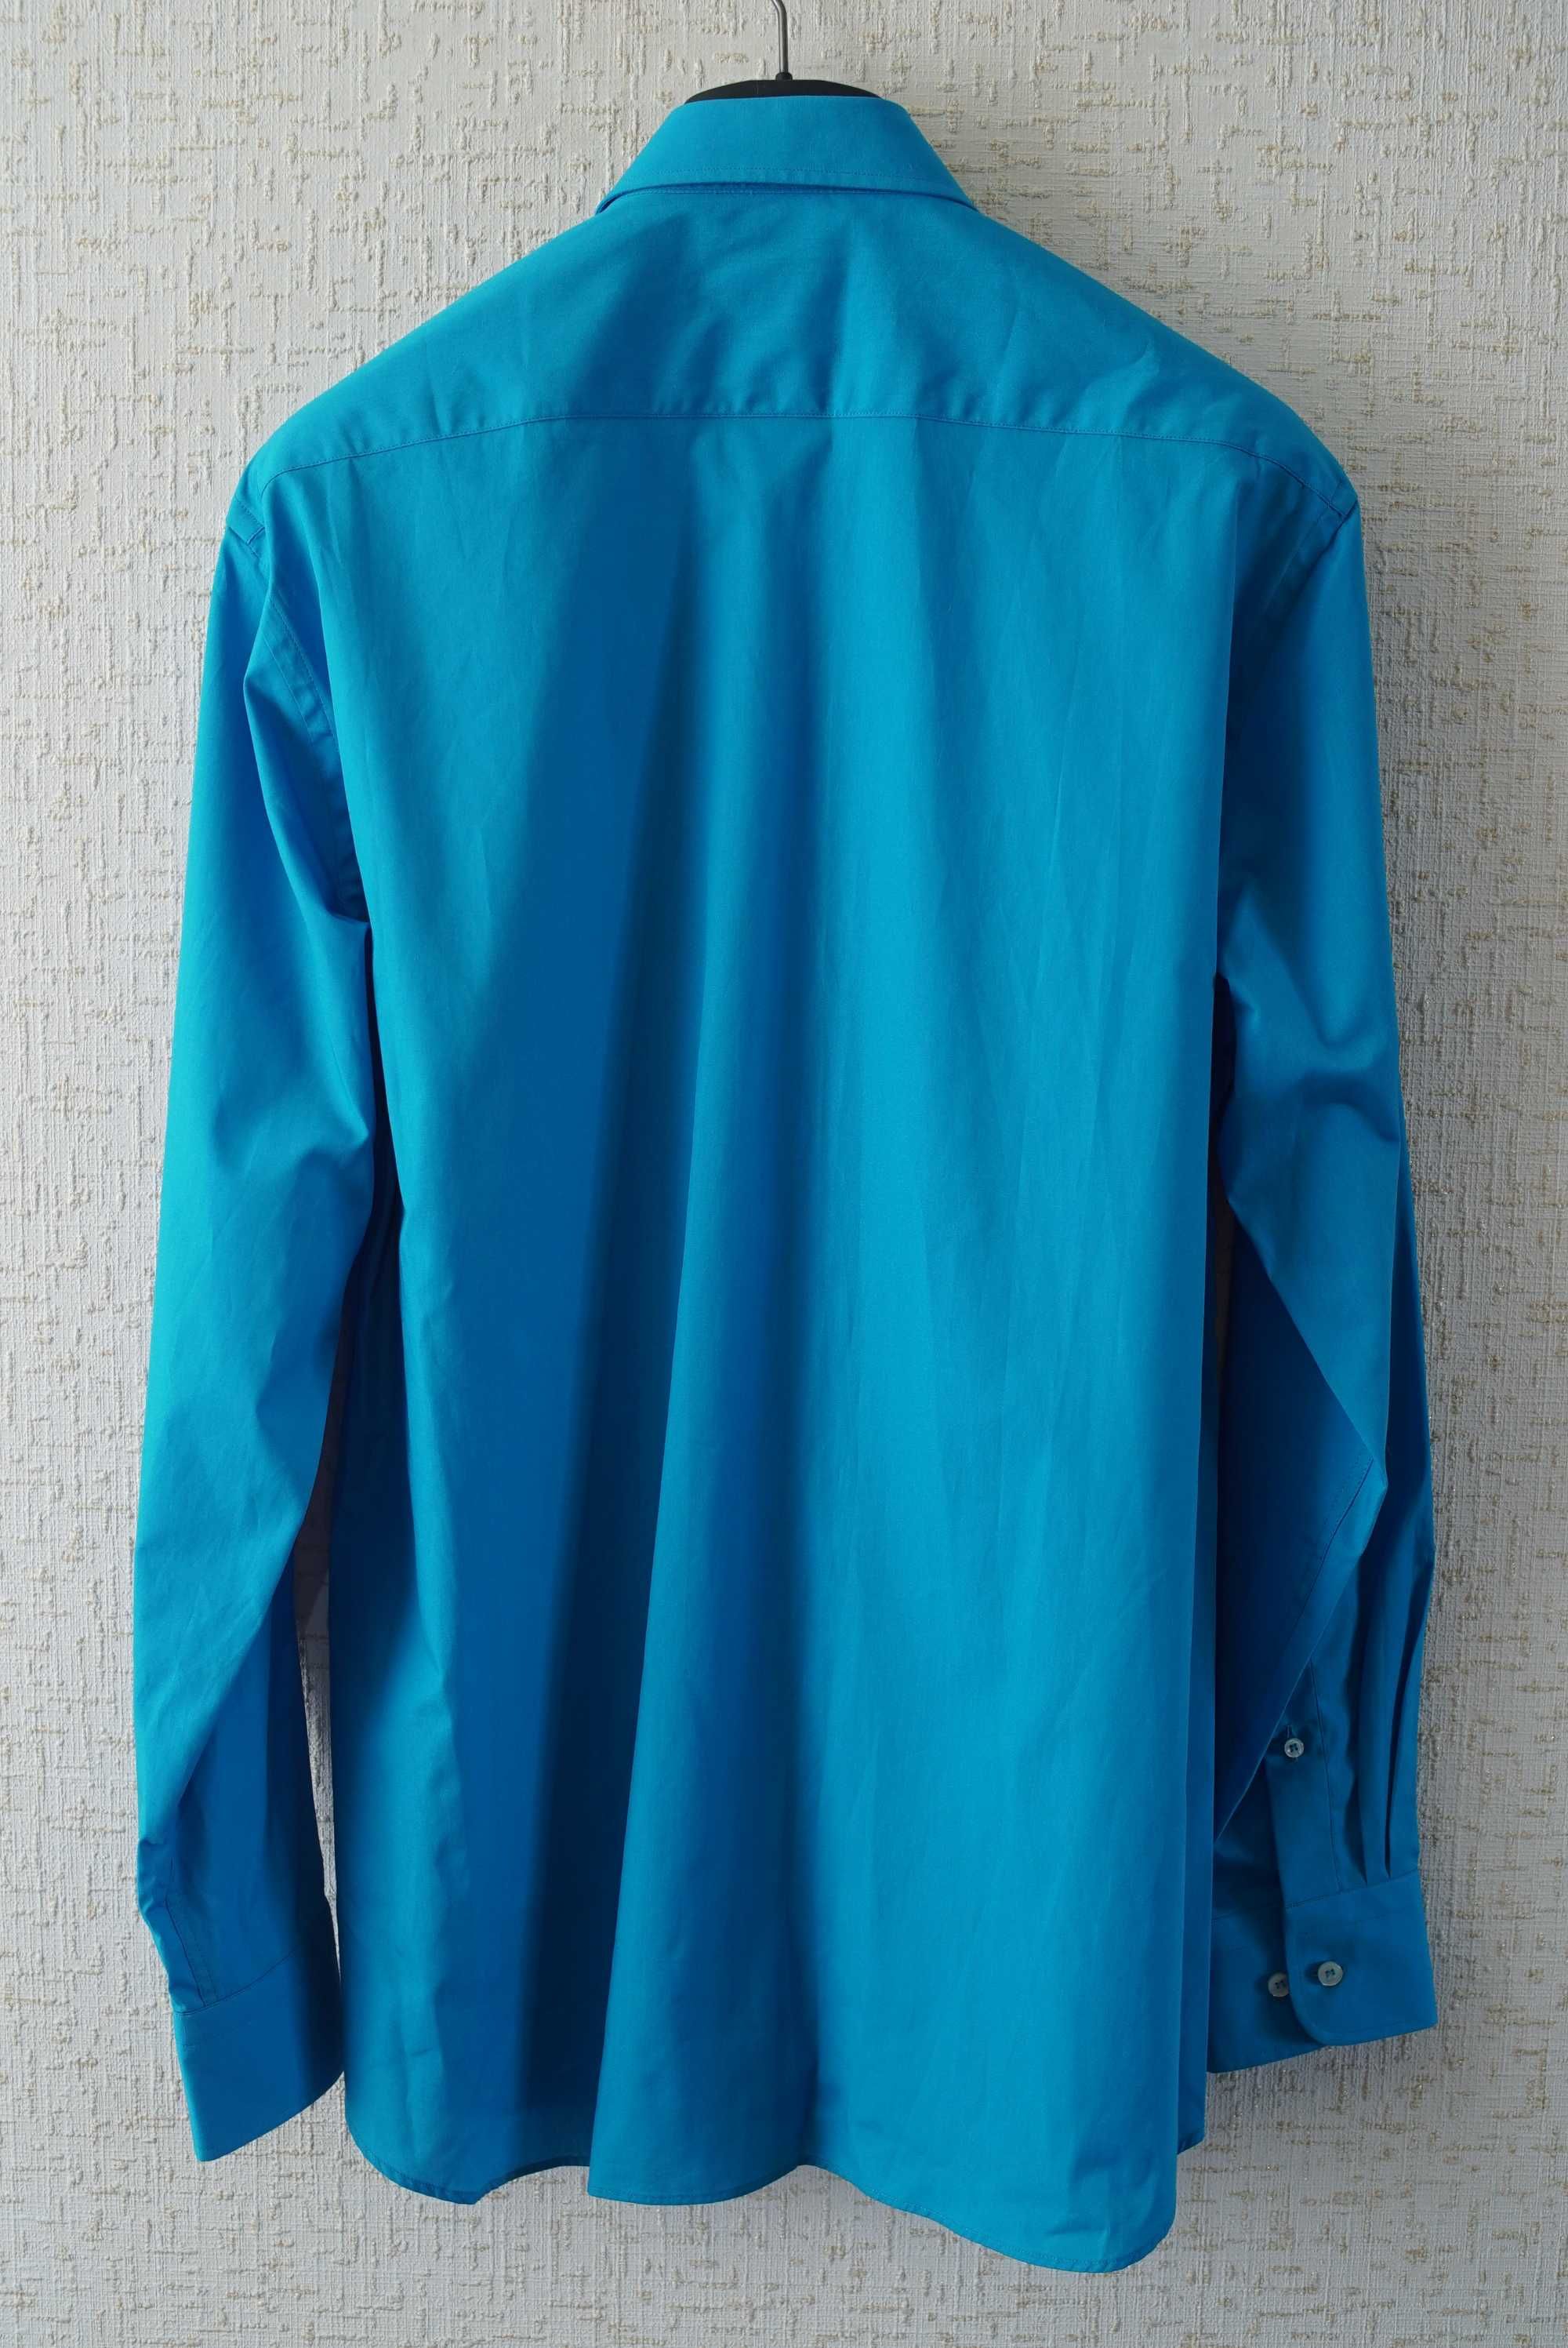 Мужская рубашка PAUL & SHARK (Италия), голубого цвета.